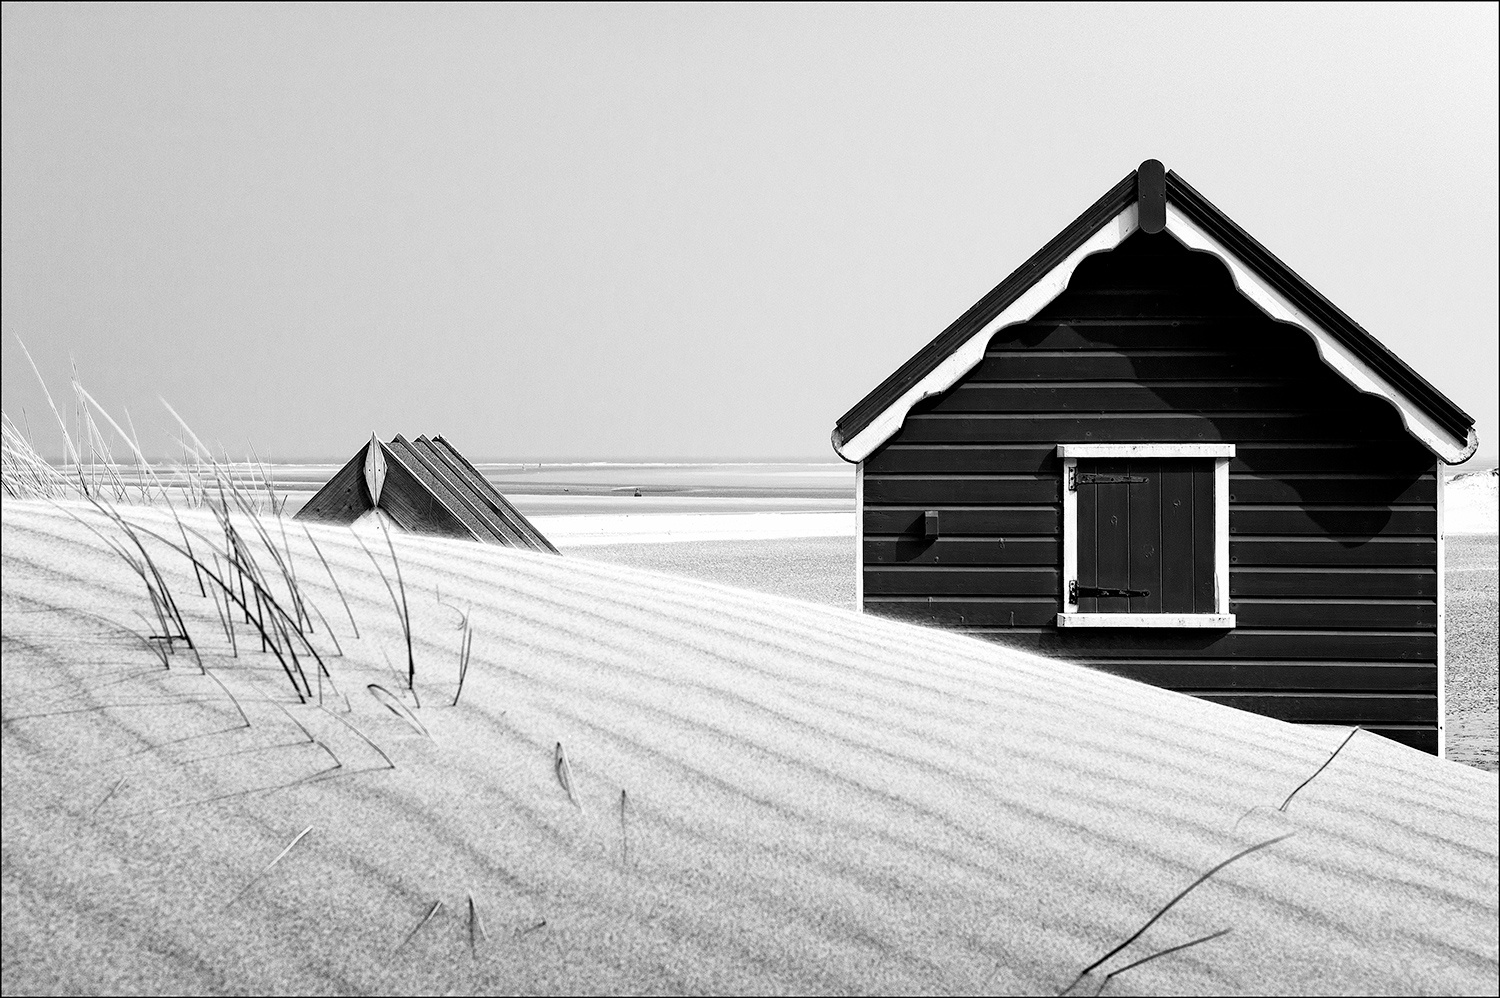 The Hut by Mark Farquharson